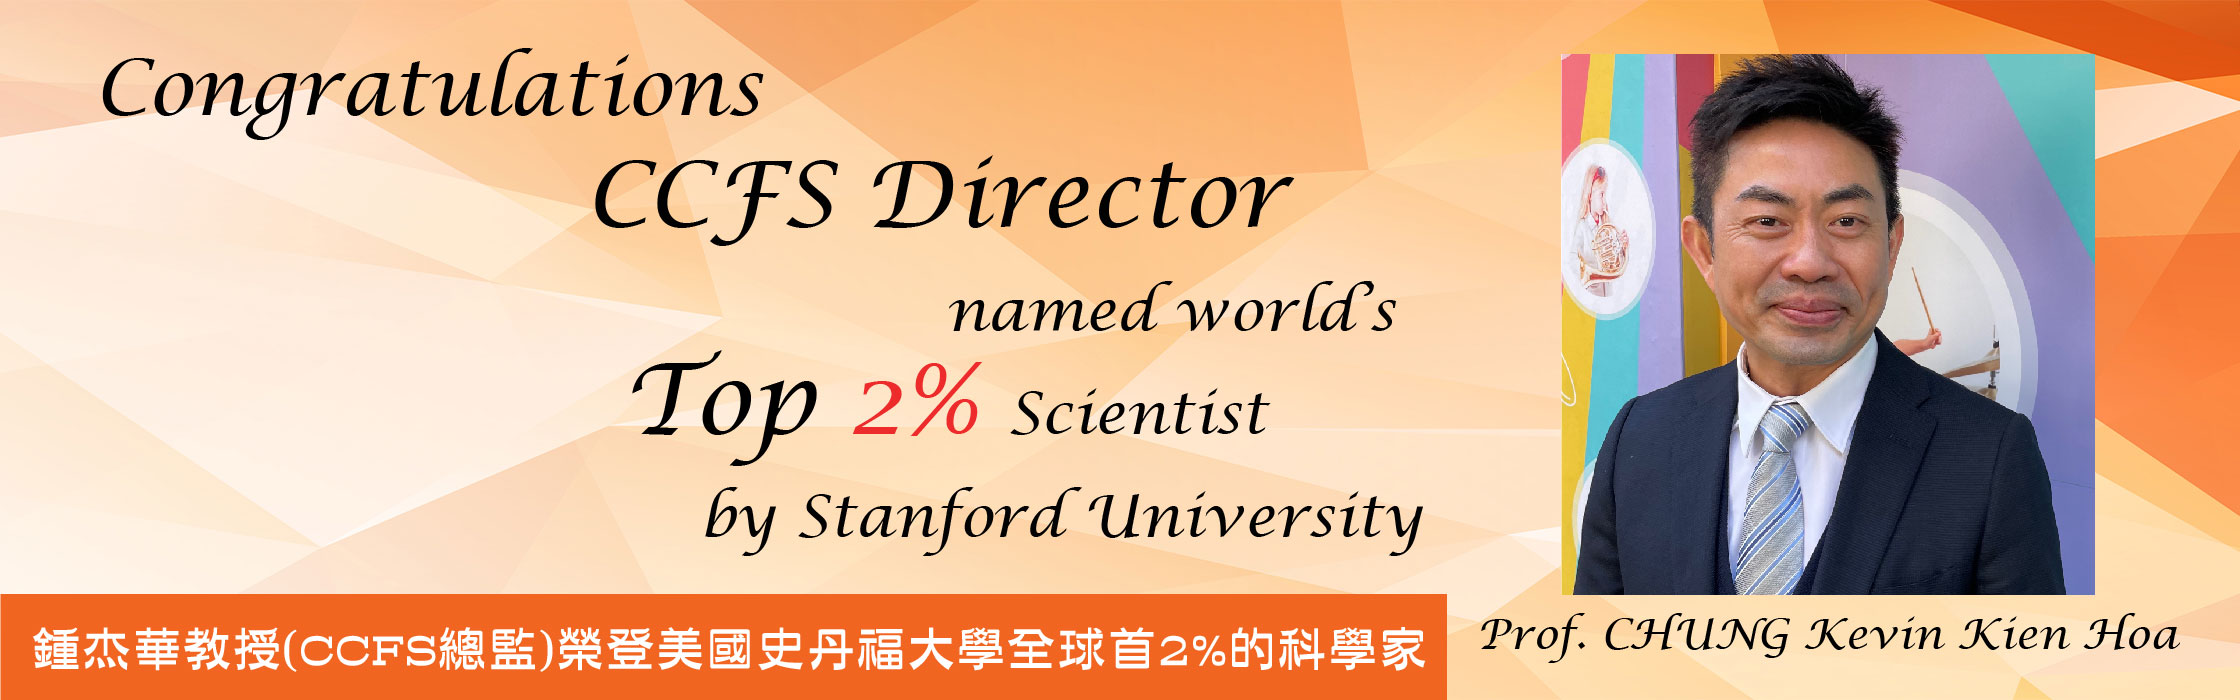 Prof. CHUNG_Website Banner